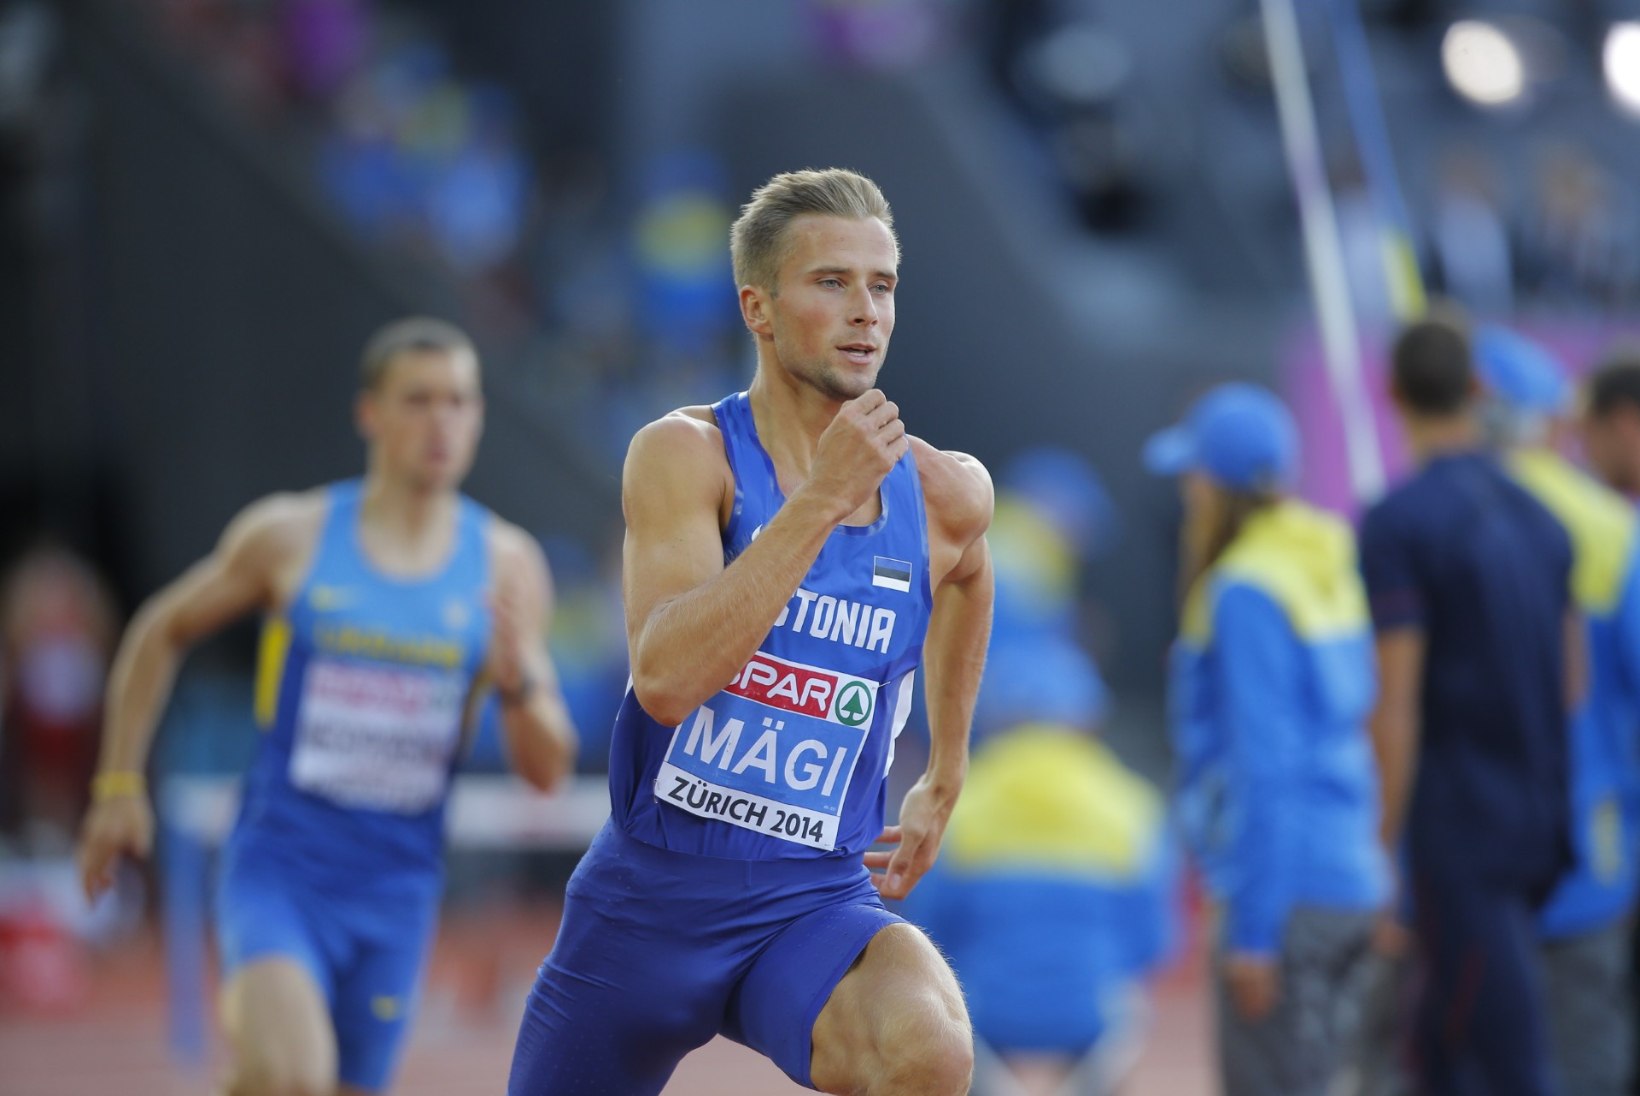 FOTOD! Uue Eesti rekordi püstitanud Rasmus Mägi pääses probleemitult finaali